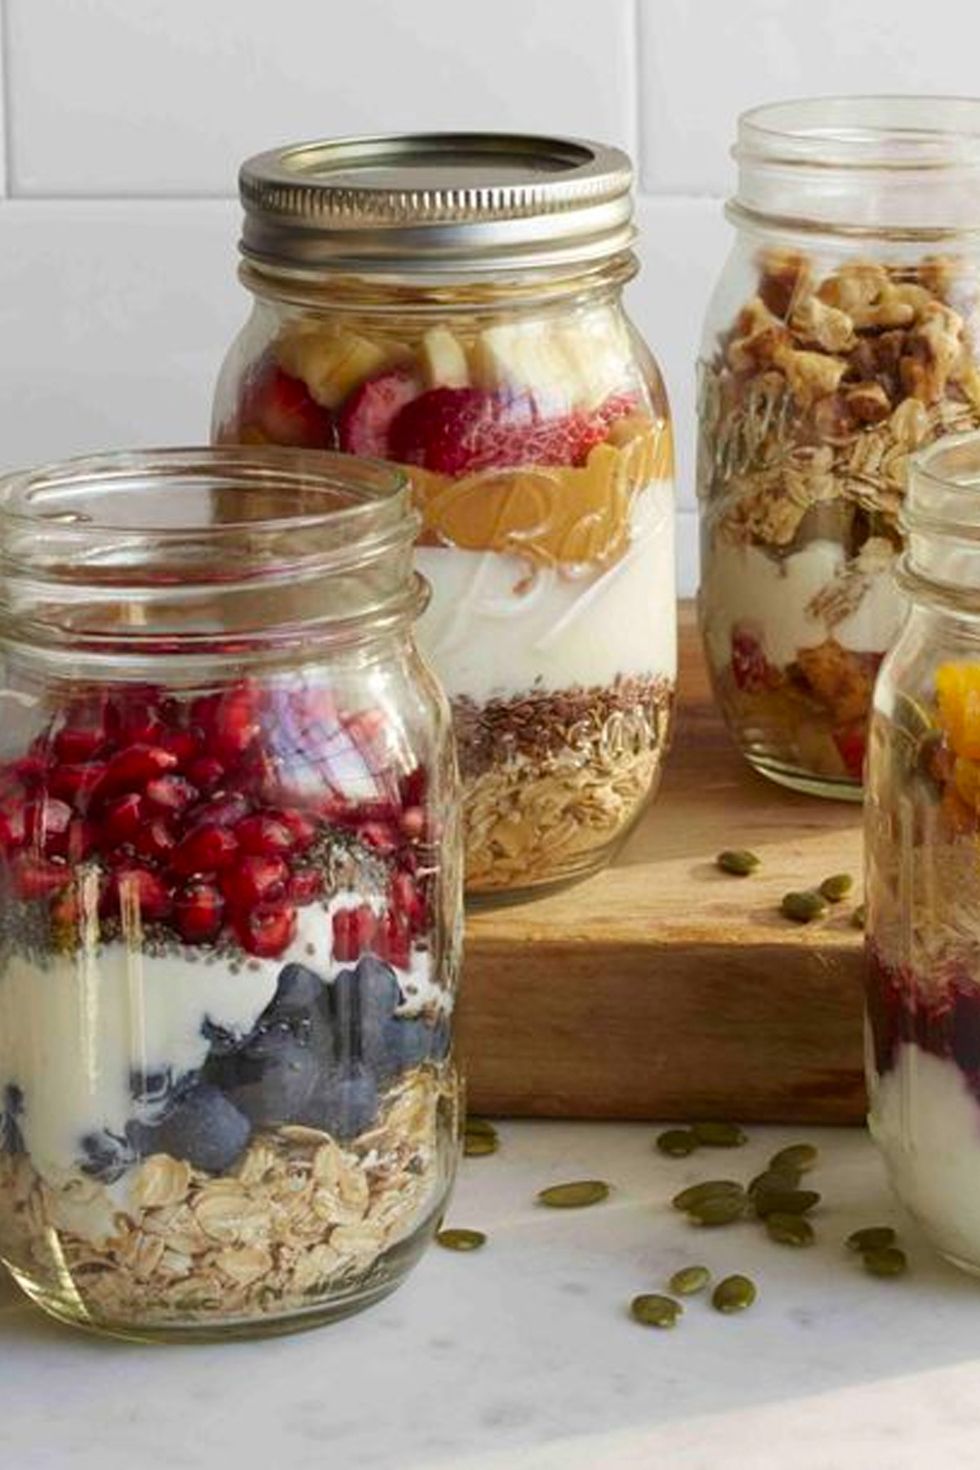 easy breakfast ideas overnight oats